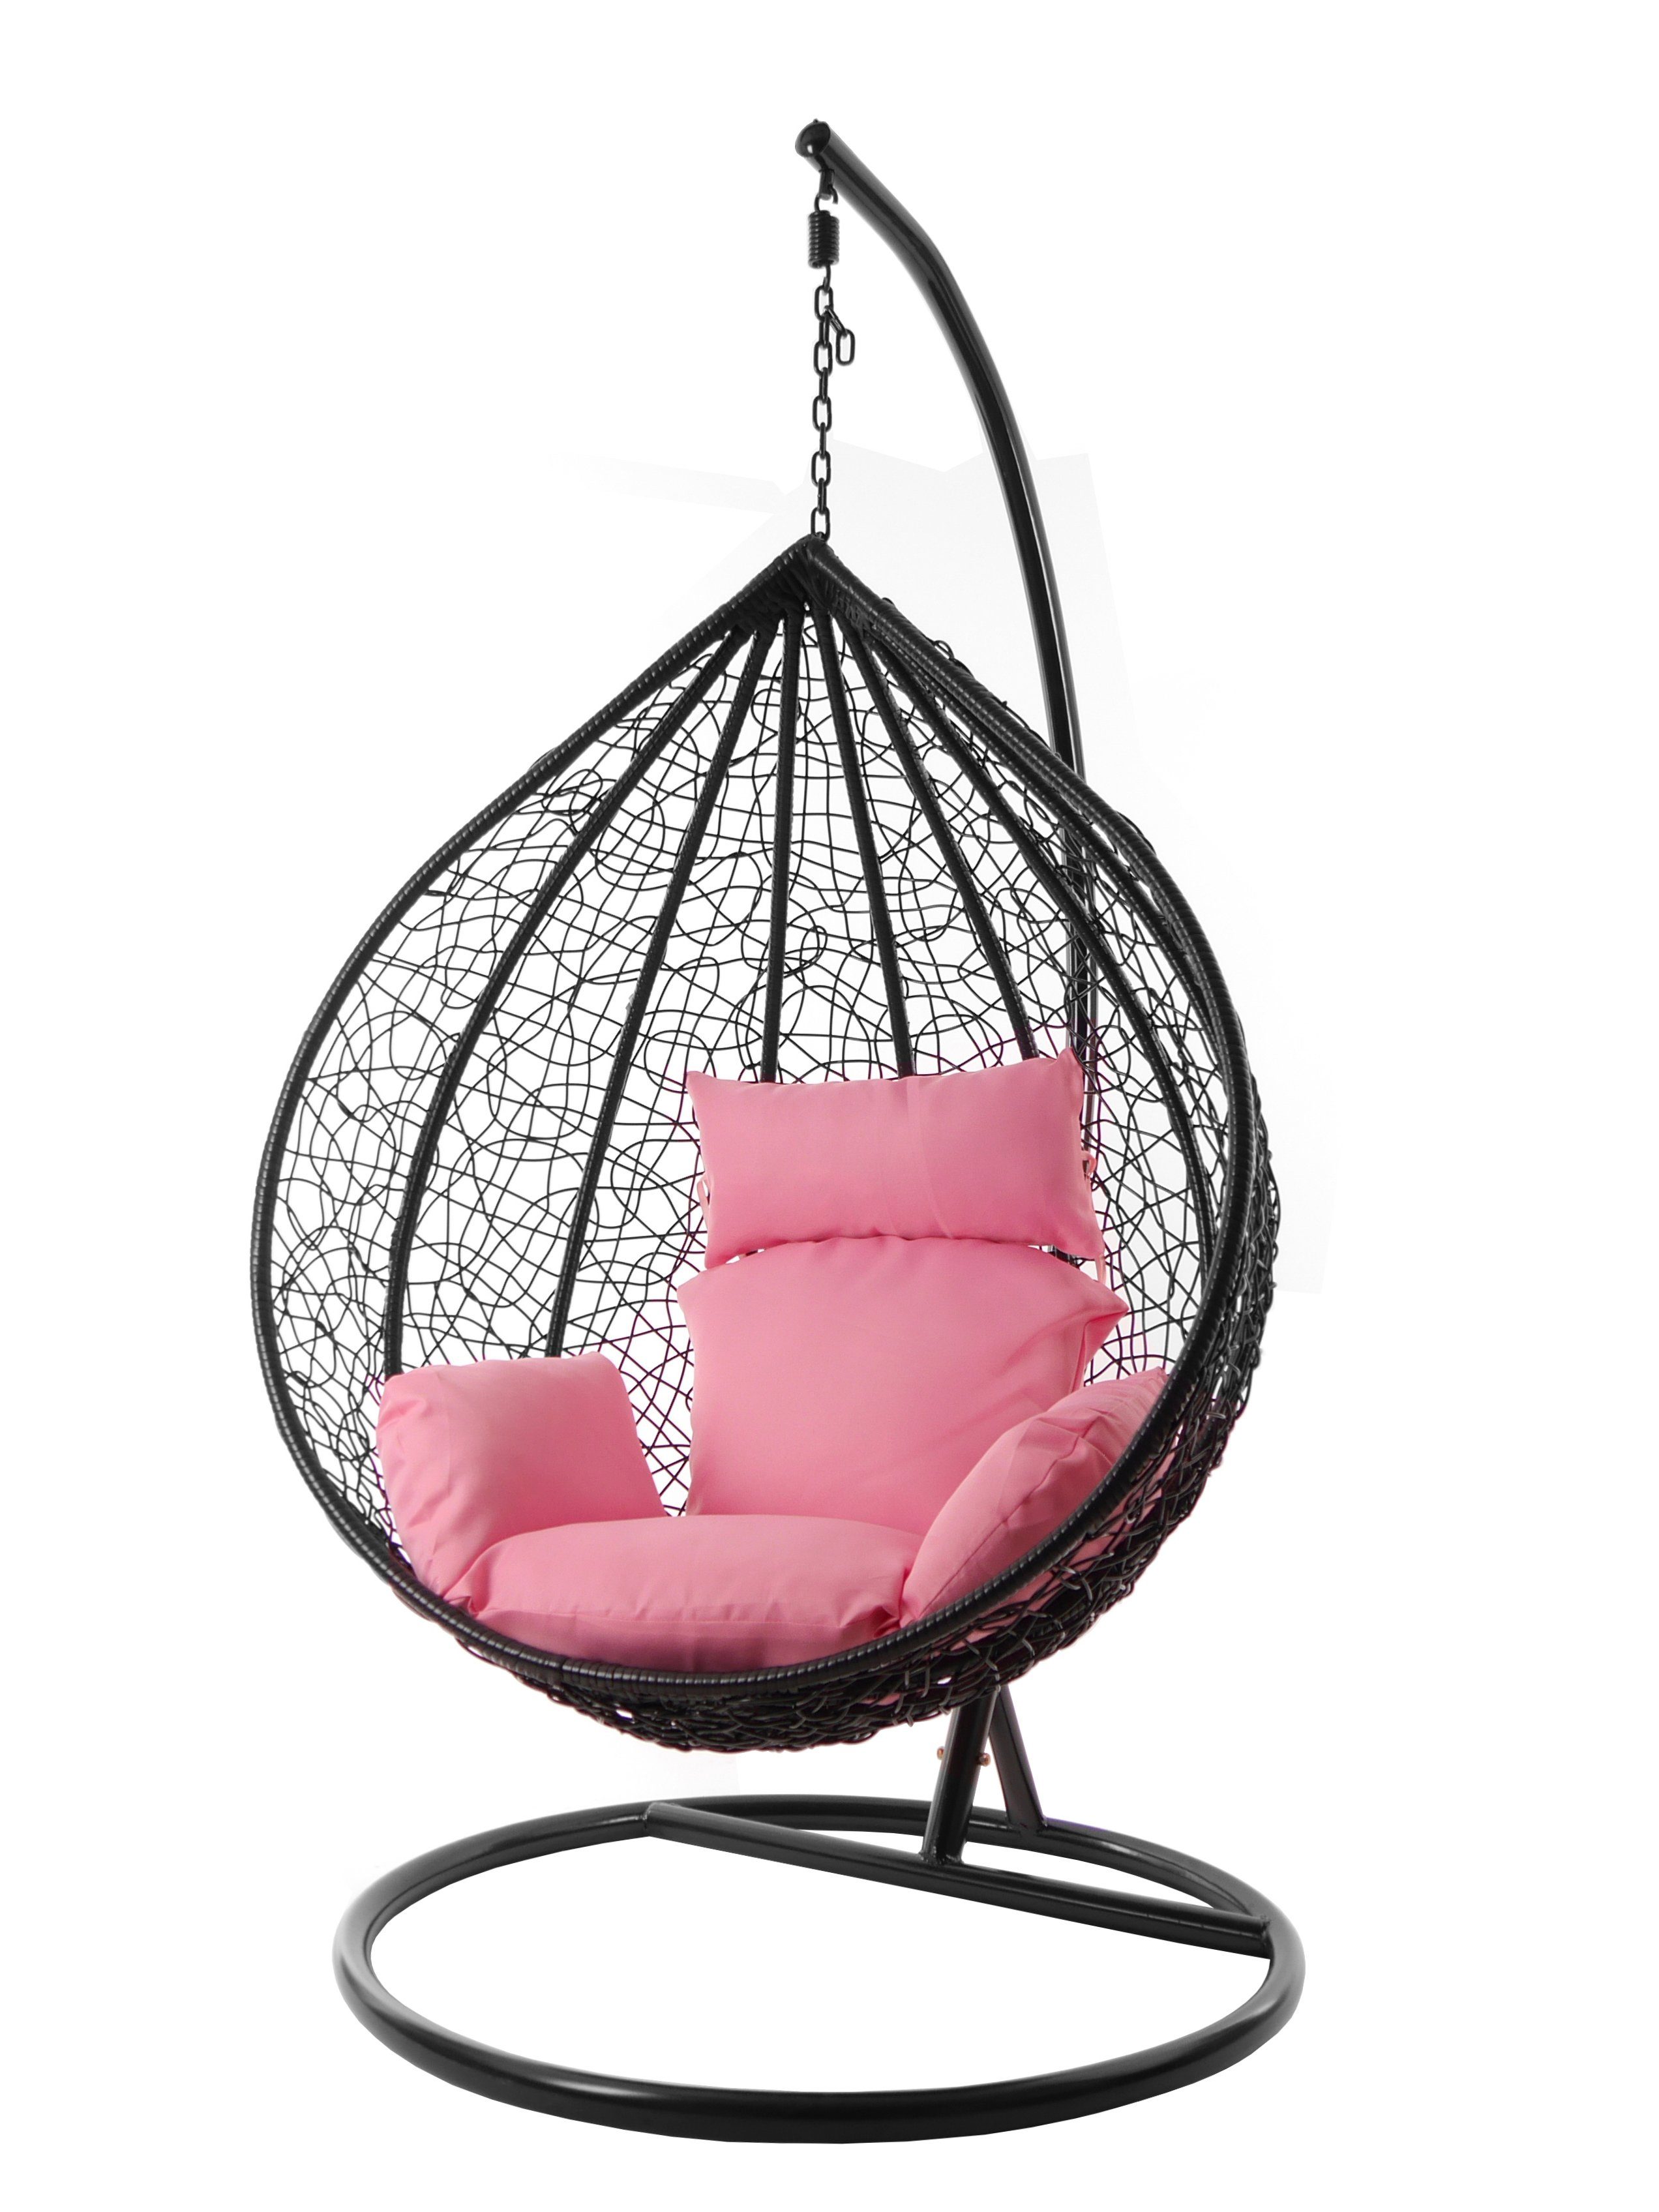 KIDEO Hängesessel Hängesessel MANACOR schwarz, edel, XXL und Nest-Kissen, inklusive, Chair, Gestell Farben Kissen lemonade) Swing rosa verschiedene (3002